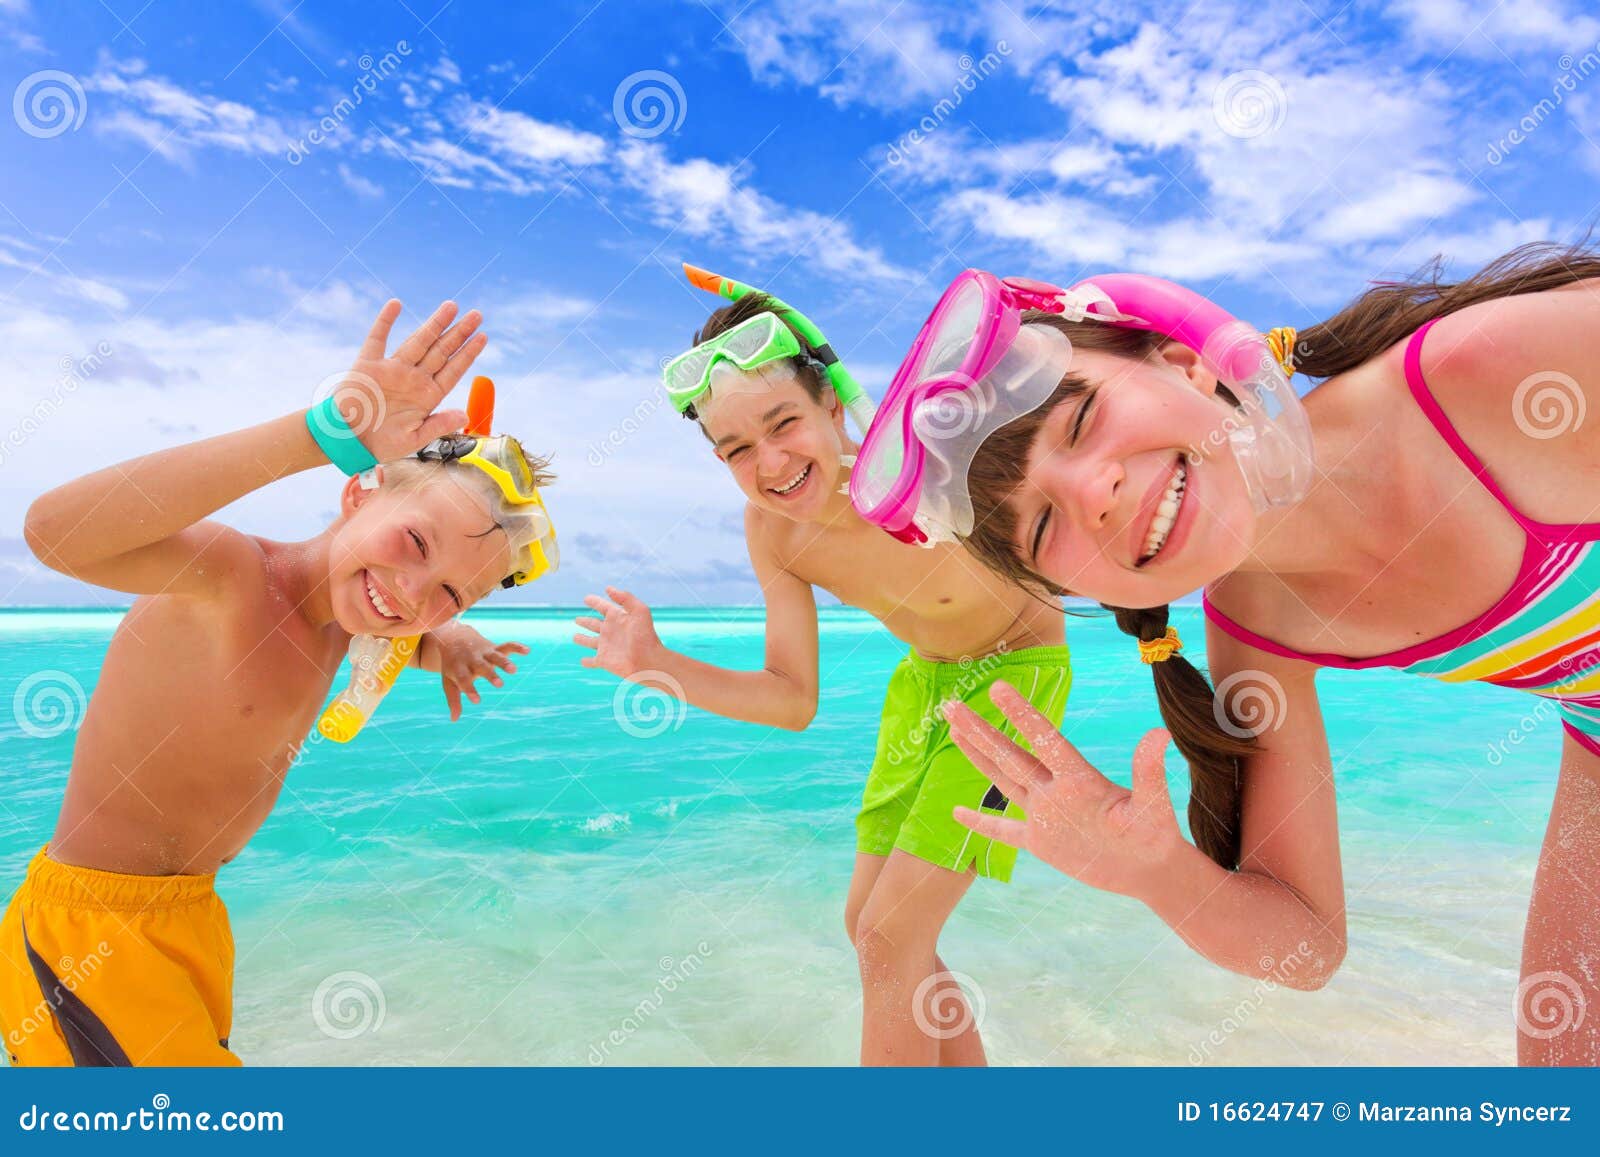 happy children on beach